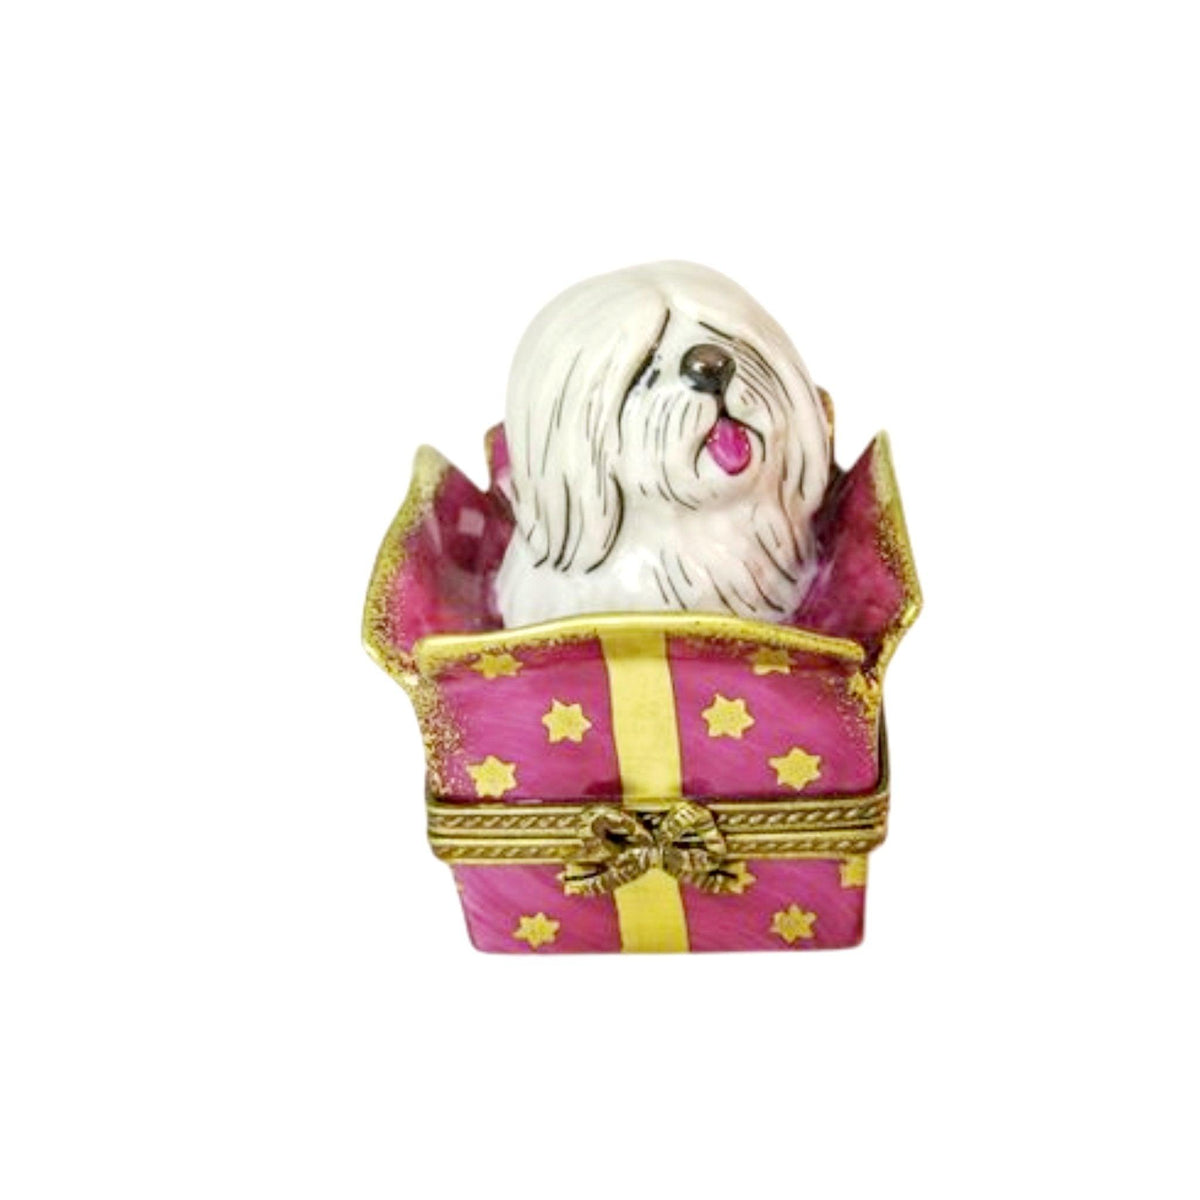 Dog in Present Porcelain Limoges Trinket Box - Limoges Box Boutique